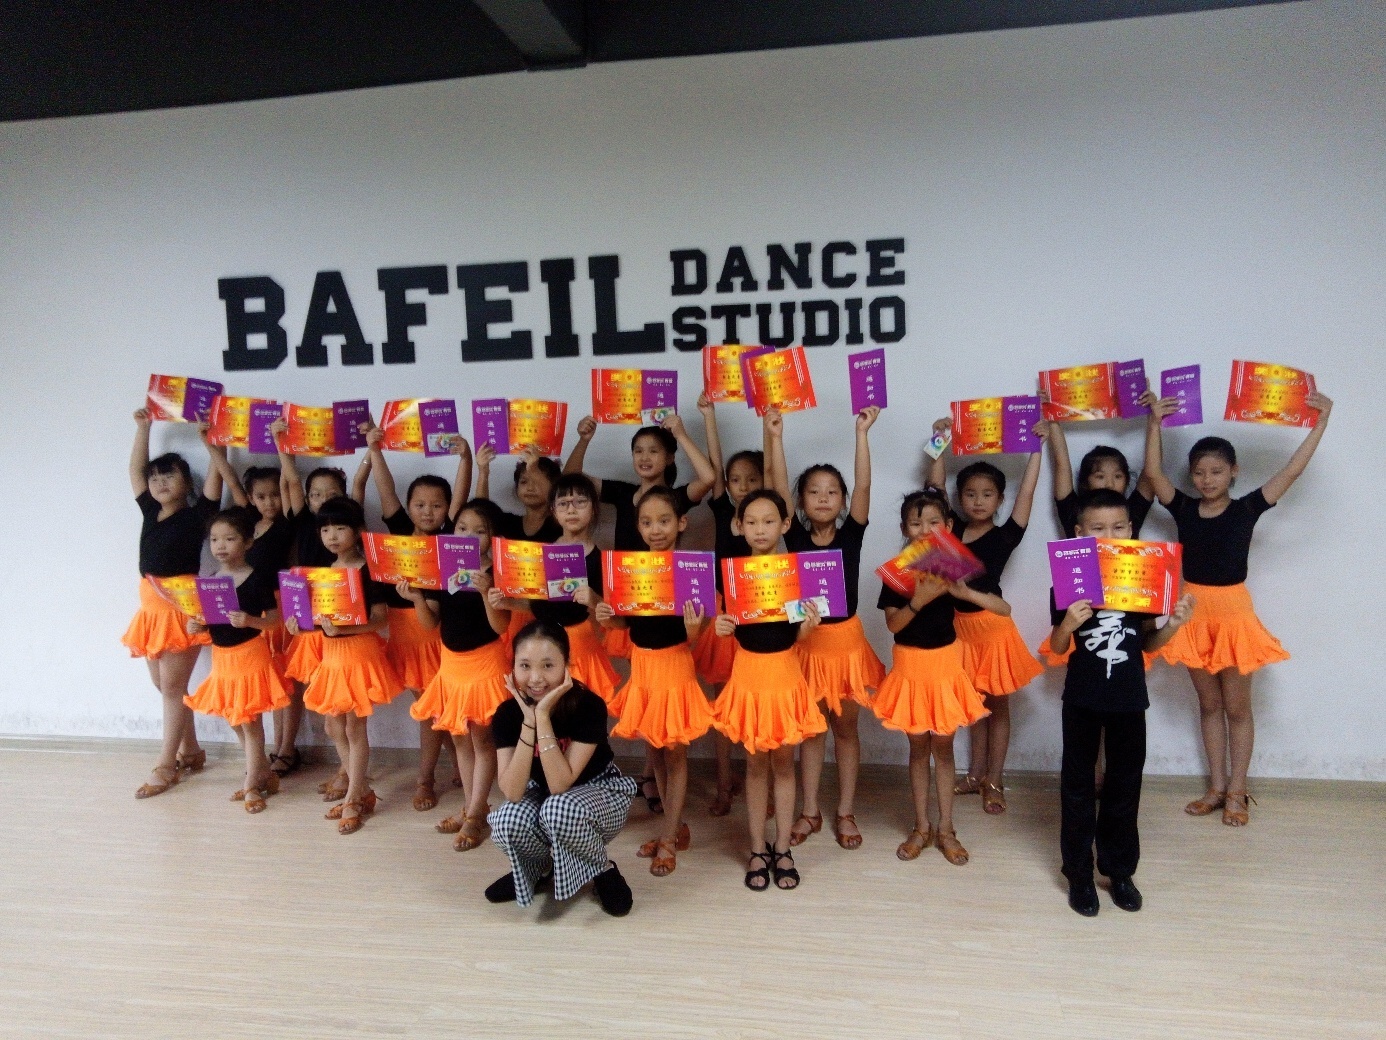 湘潭芭菲尔舞蹈学校拉丁舞班今天结业,感谢学